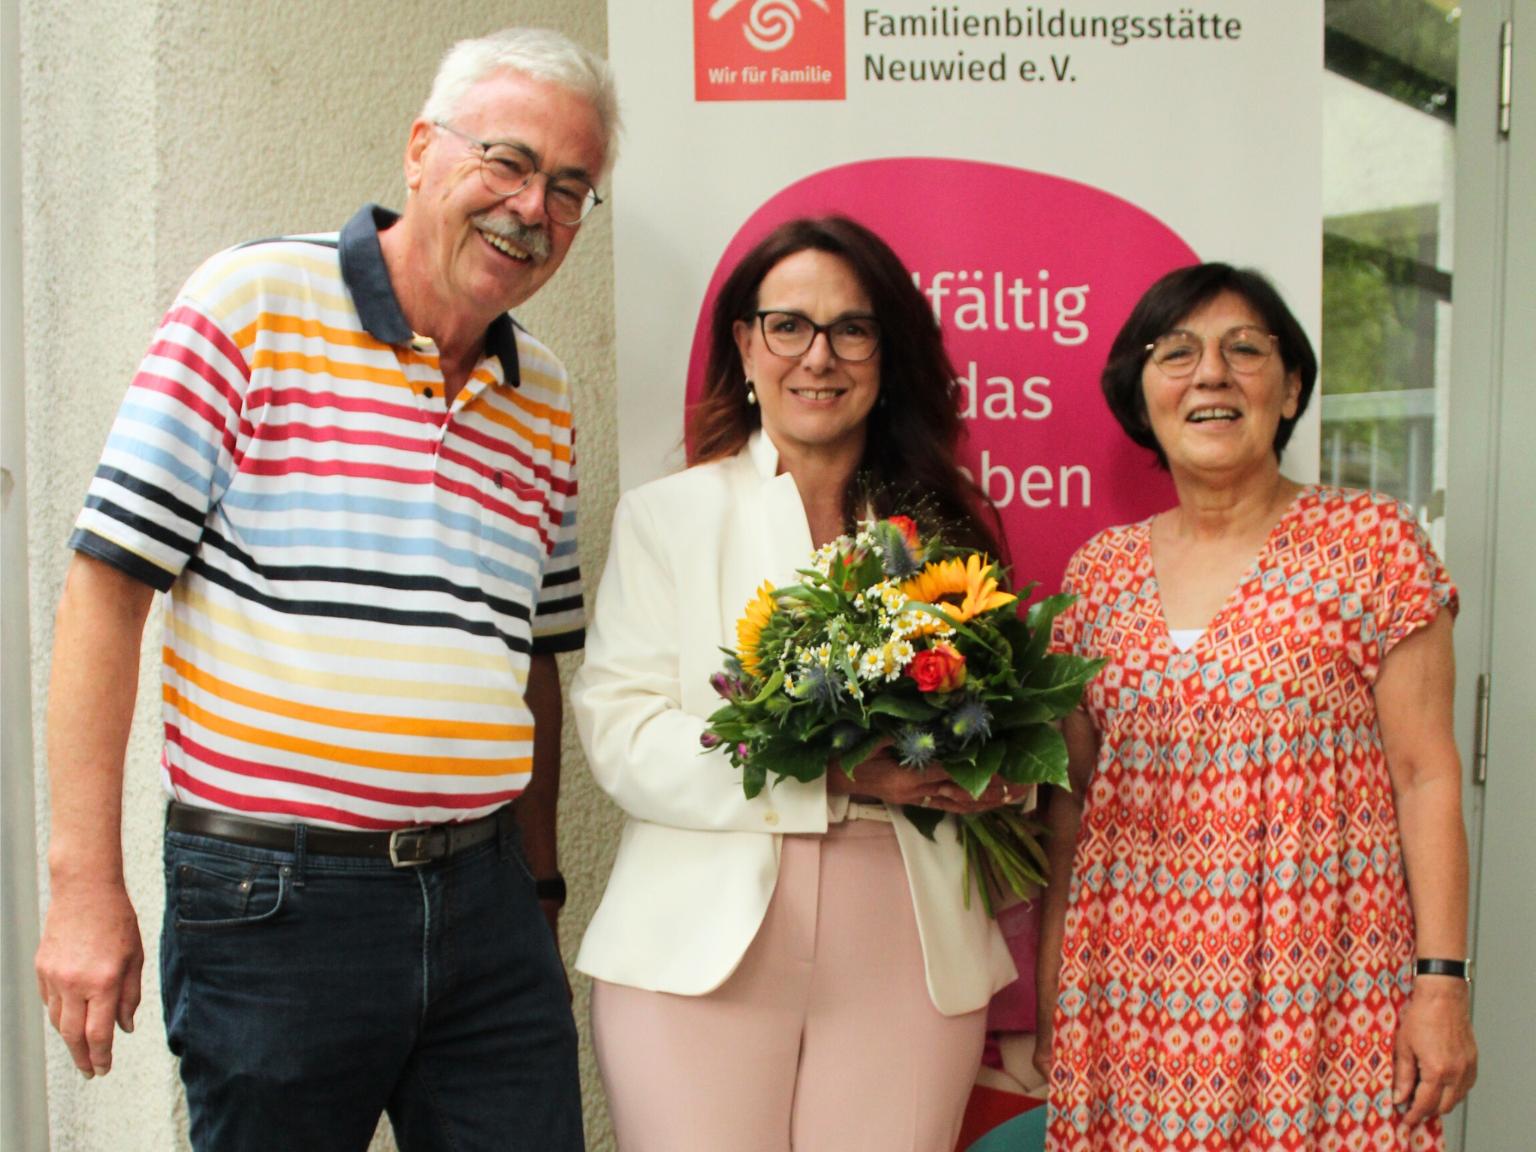 Der Vorstandsvorsitzender der katholischen Familienbildungsstätte Neuwied, Karl-Josef Heinrichs und die zweite Vorsitzende Klaudia Heck-Ritter (rechts) gratulieren der neuen geschäftsführenden Leiterin, Sylvia Schifano.